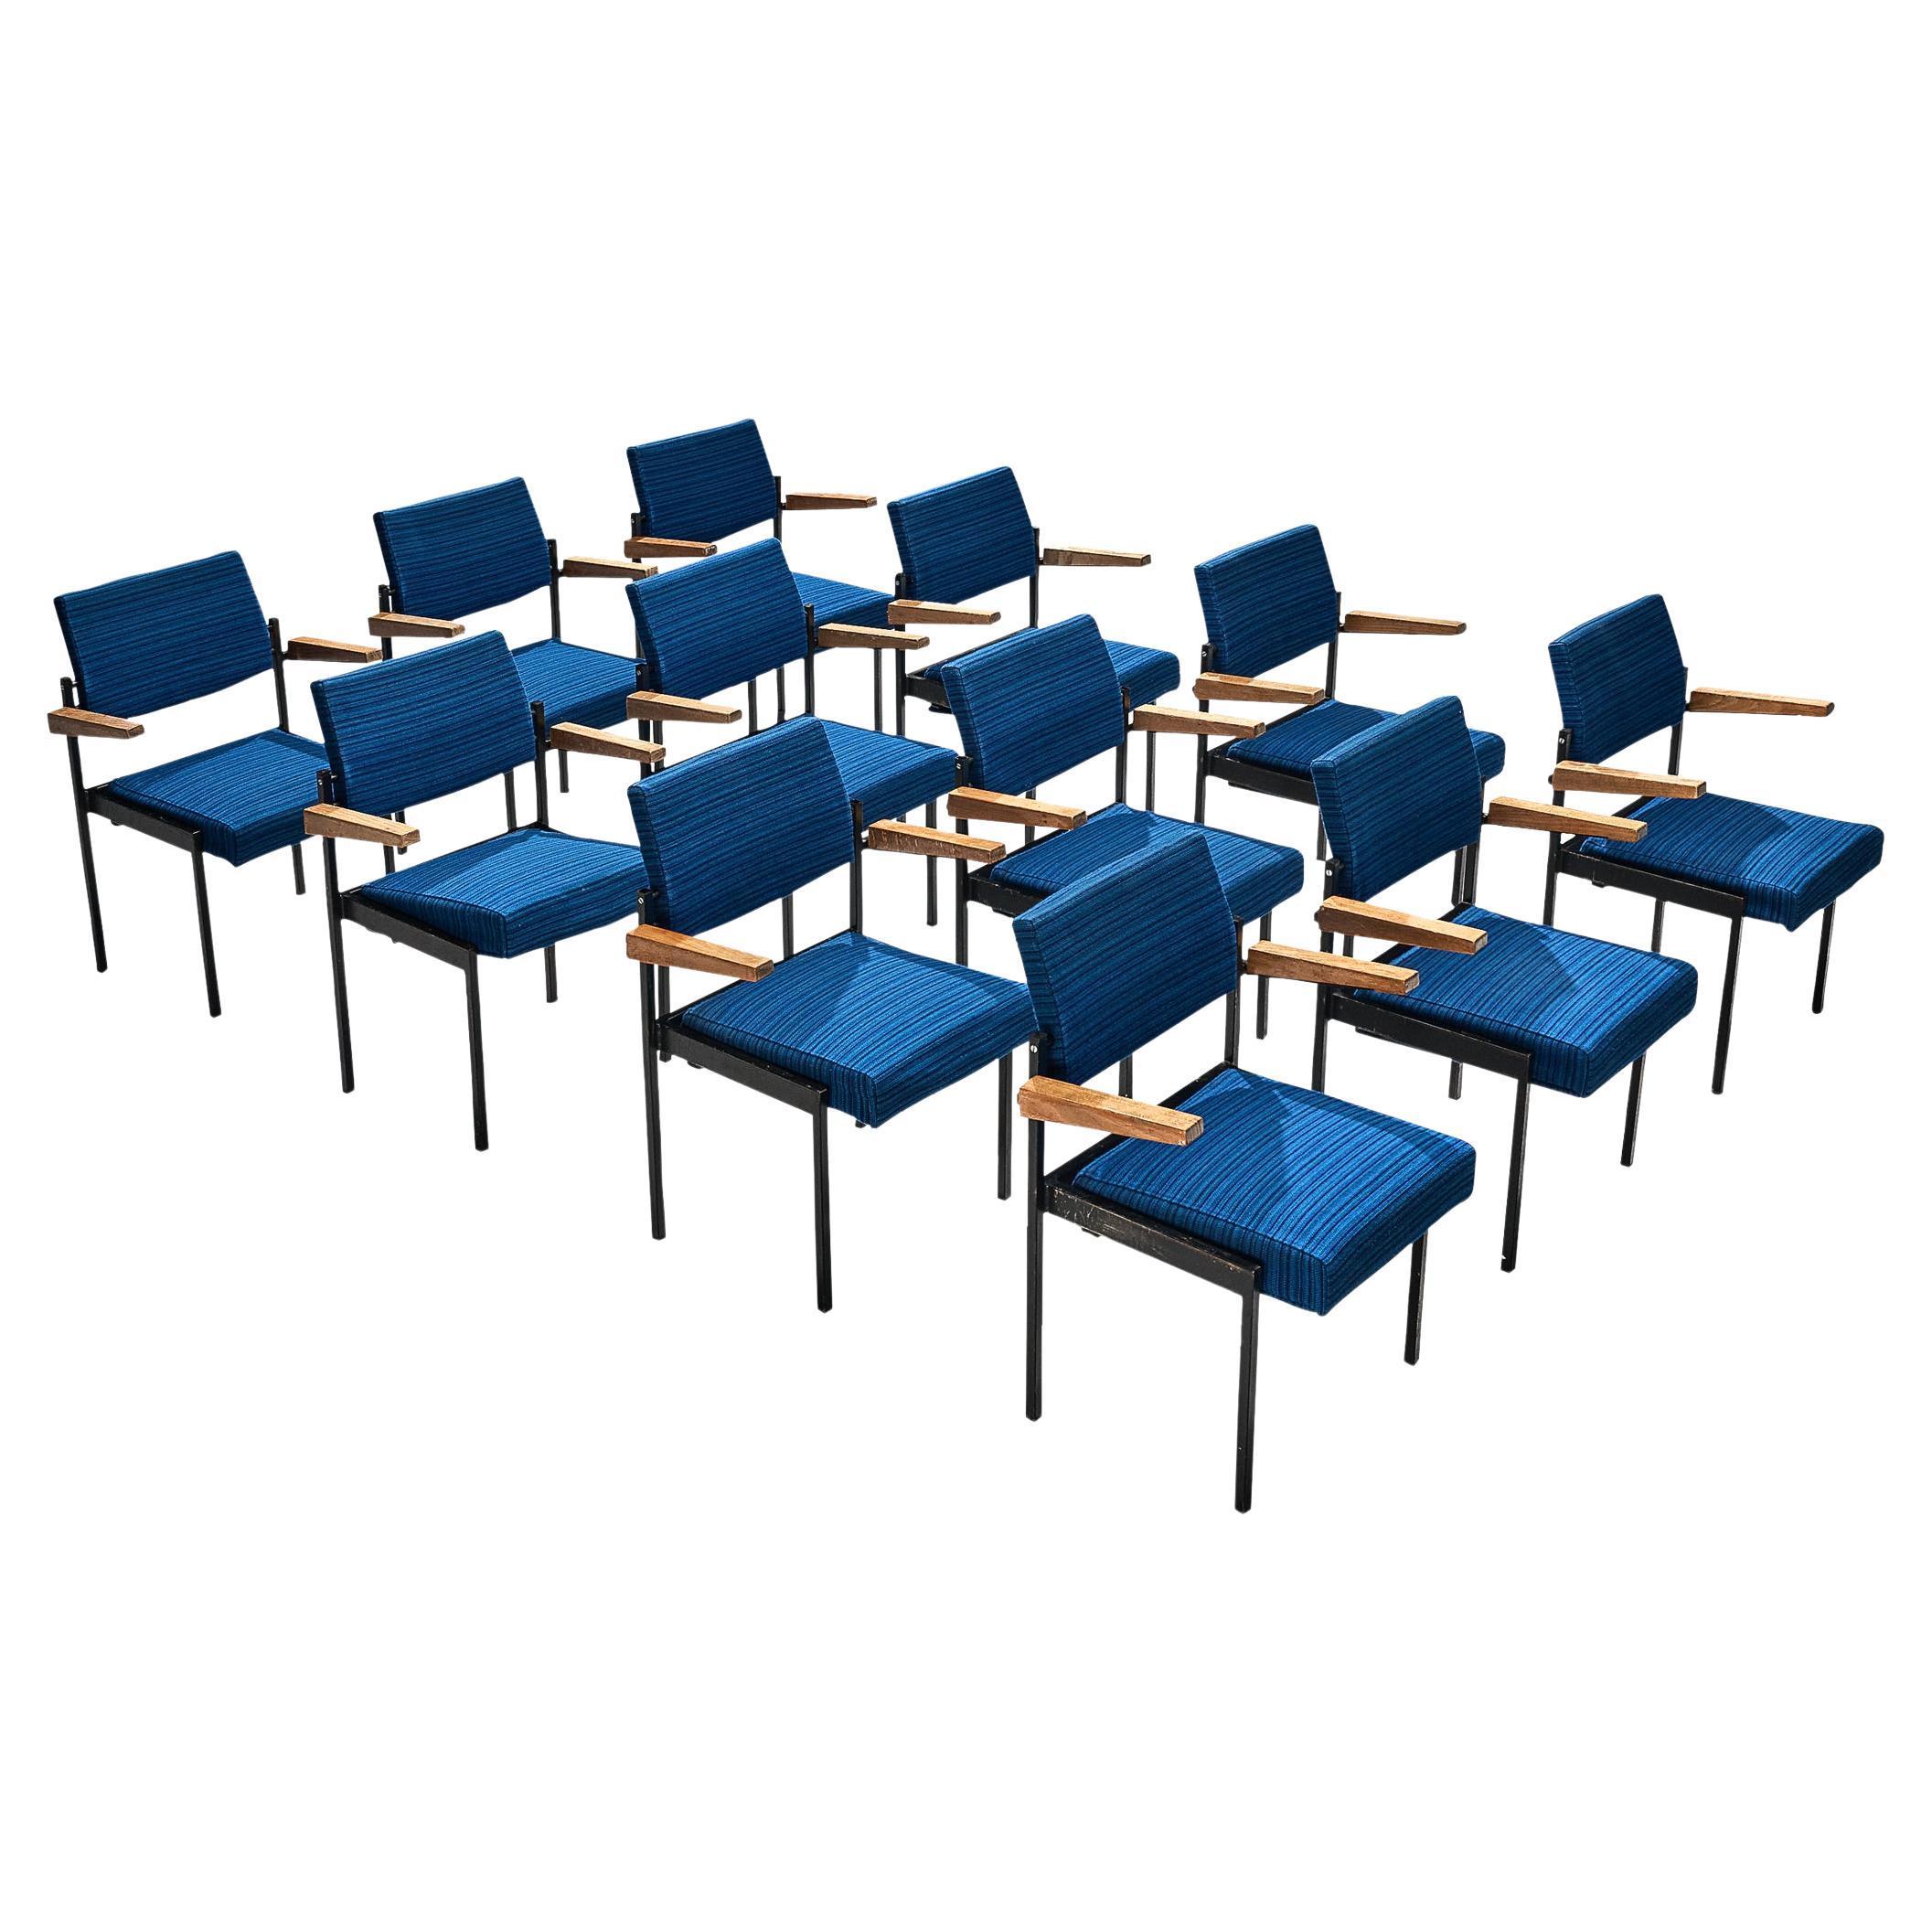 Set aus zwölf stapelbaren Sesseln mit blauer Polsterung und schwarzem Metallgestell